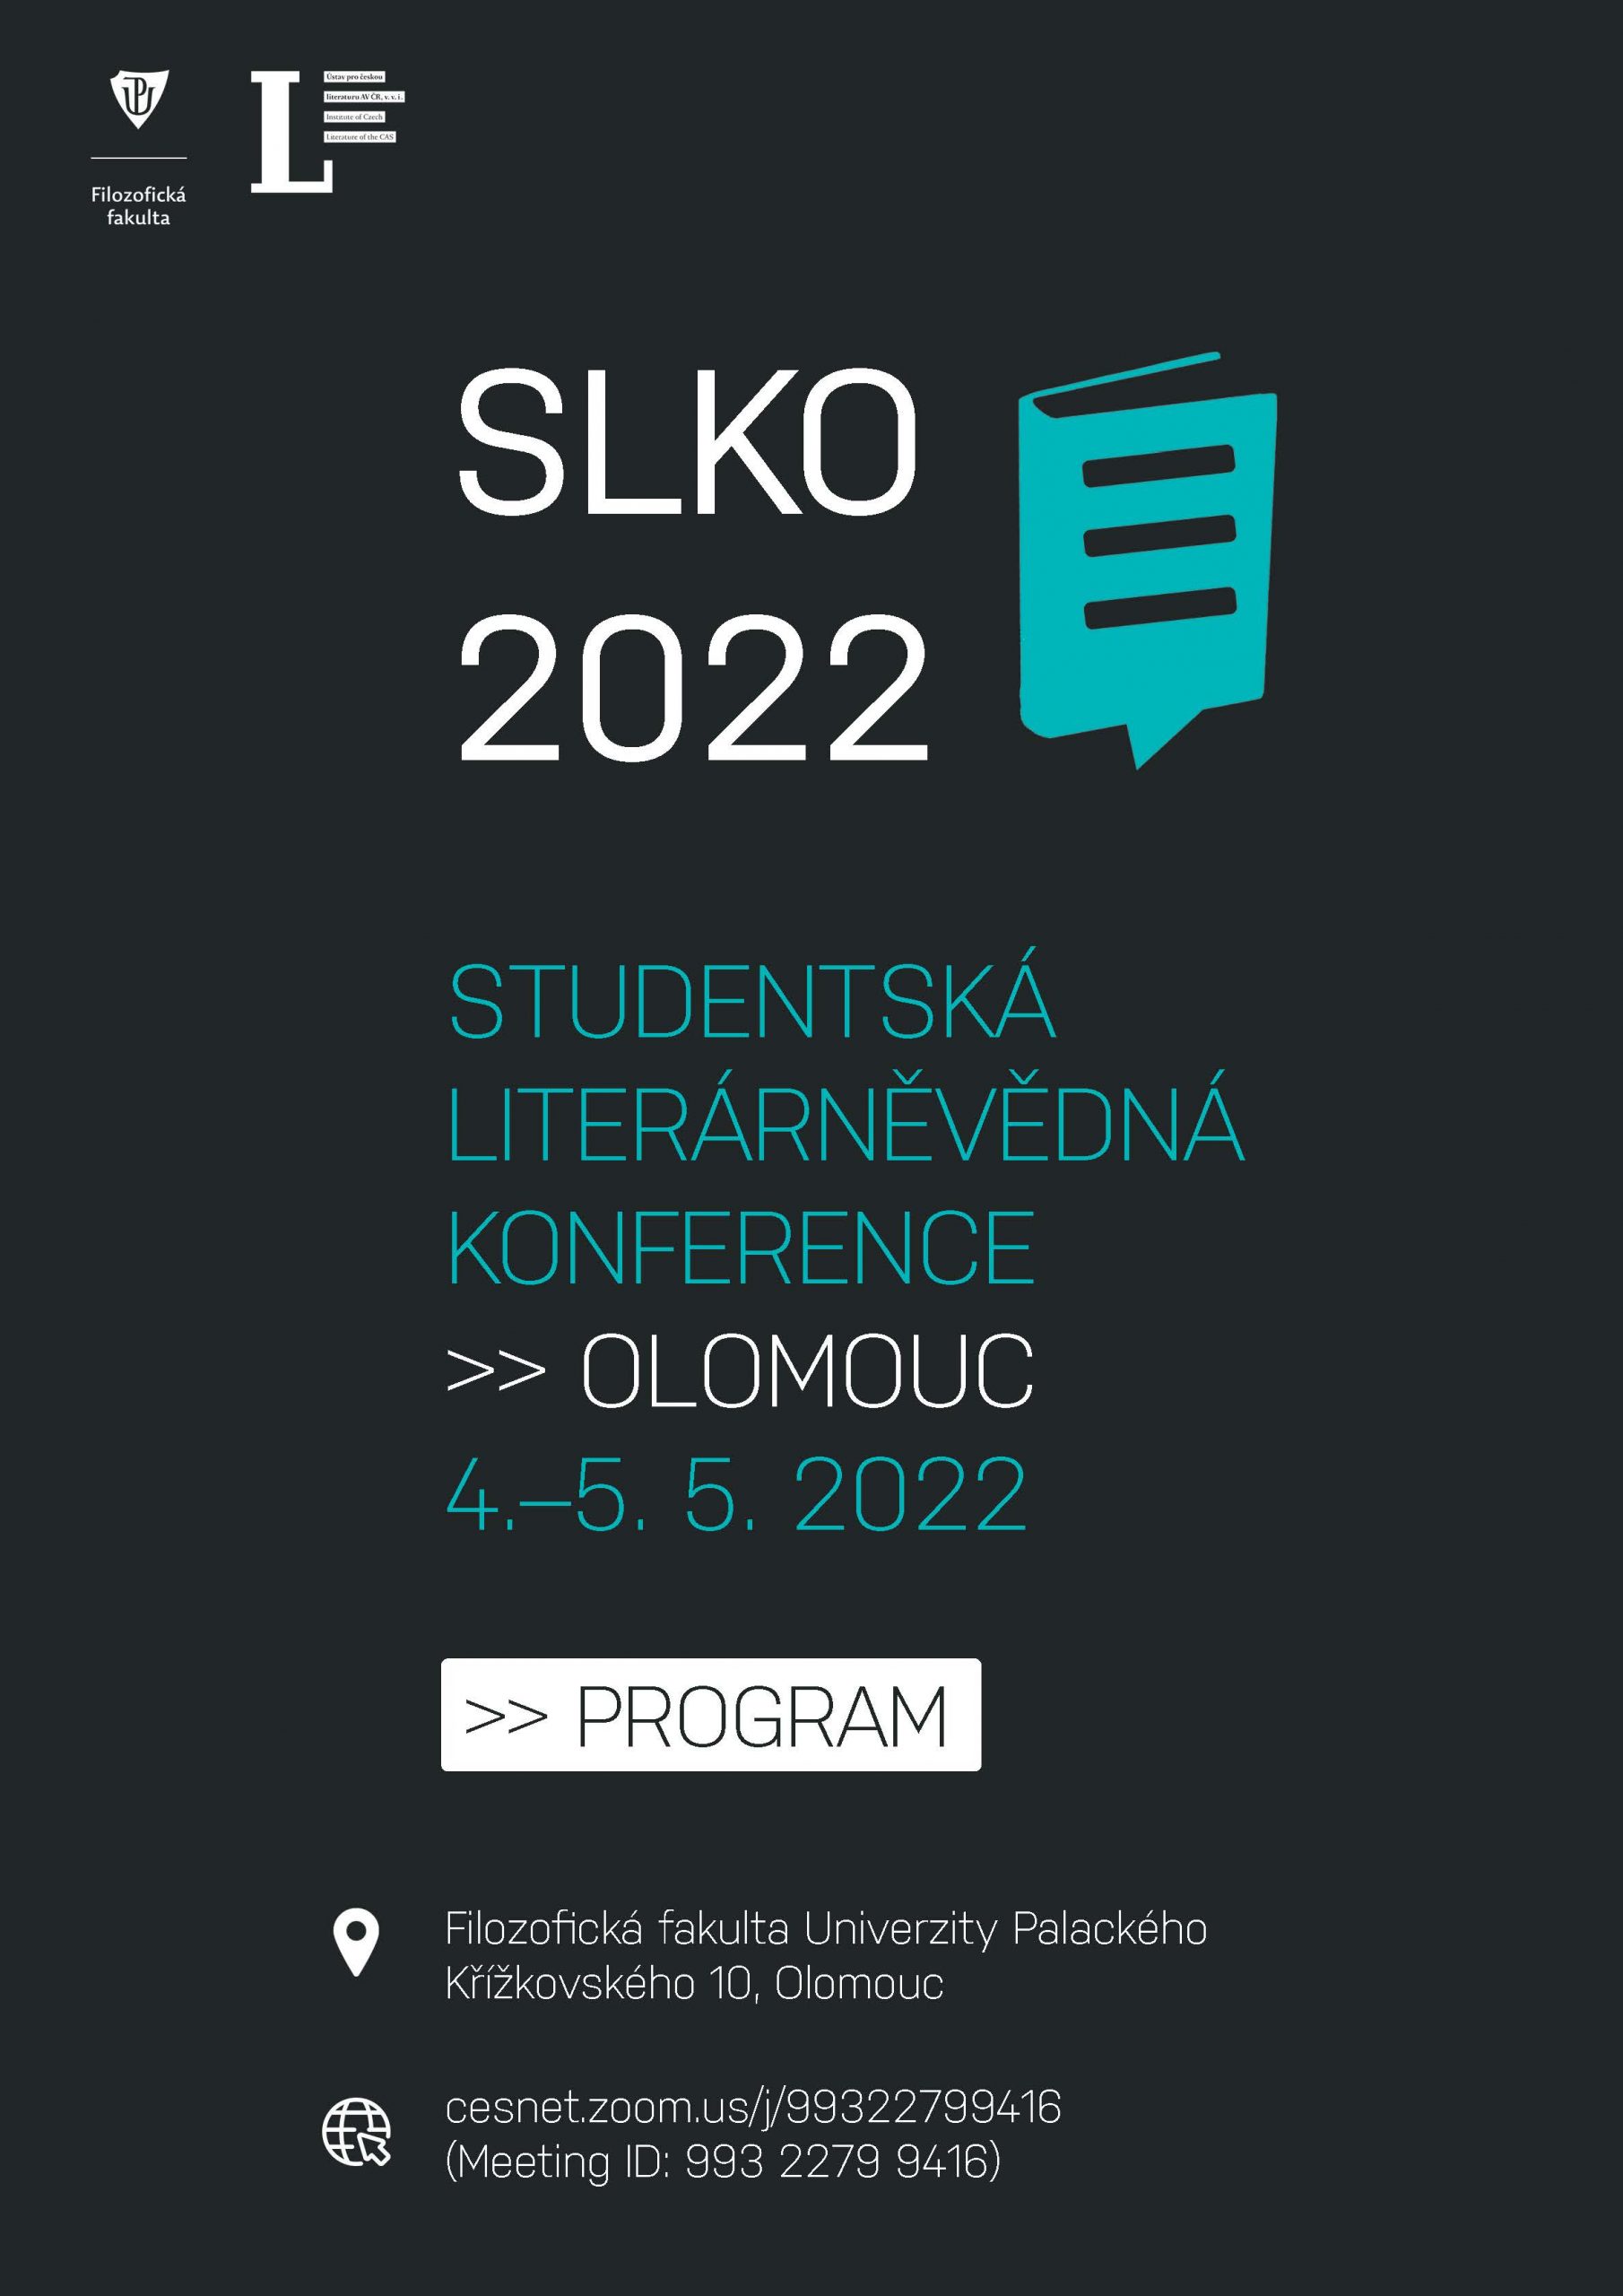 Studentská literárněvědná konference 2022 program